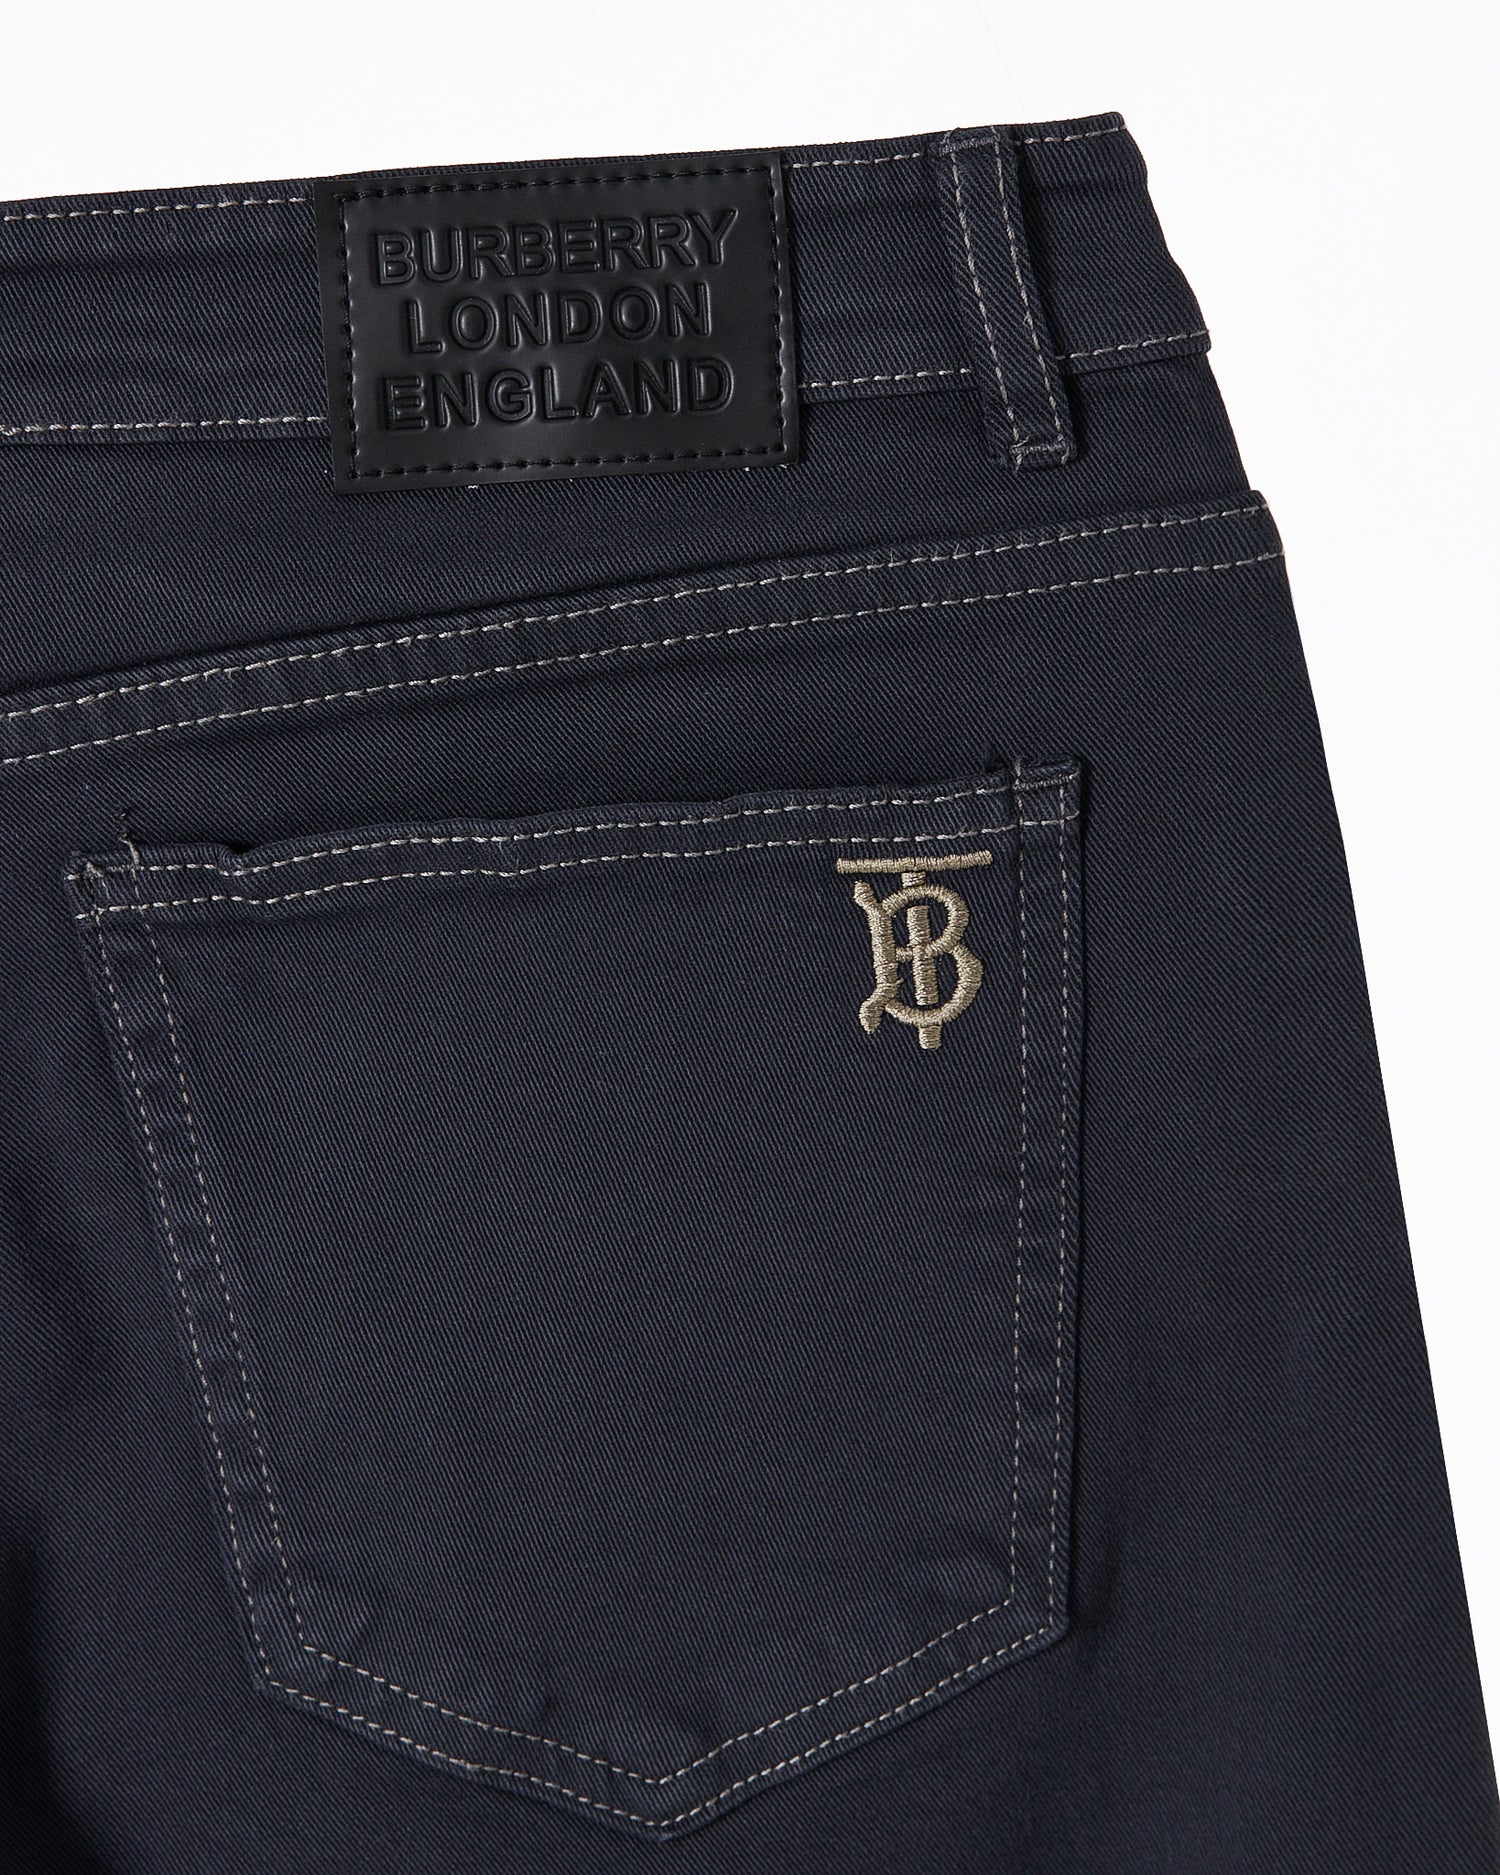 BUR TB Embroidered Men Black Slim Fit Jeans 25.90